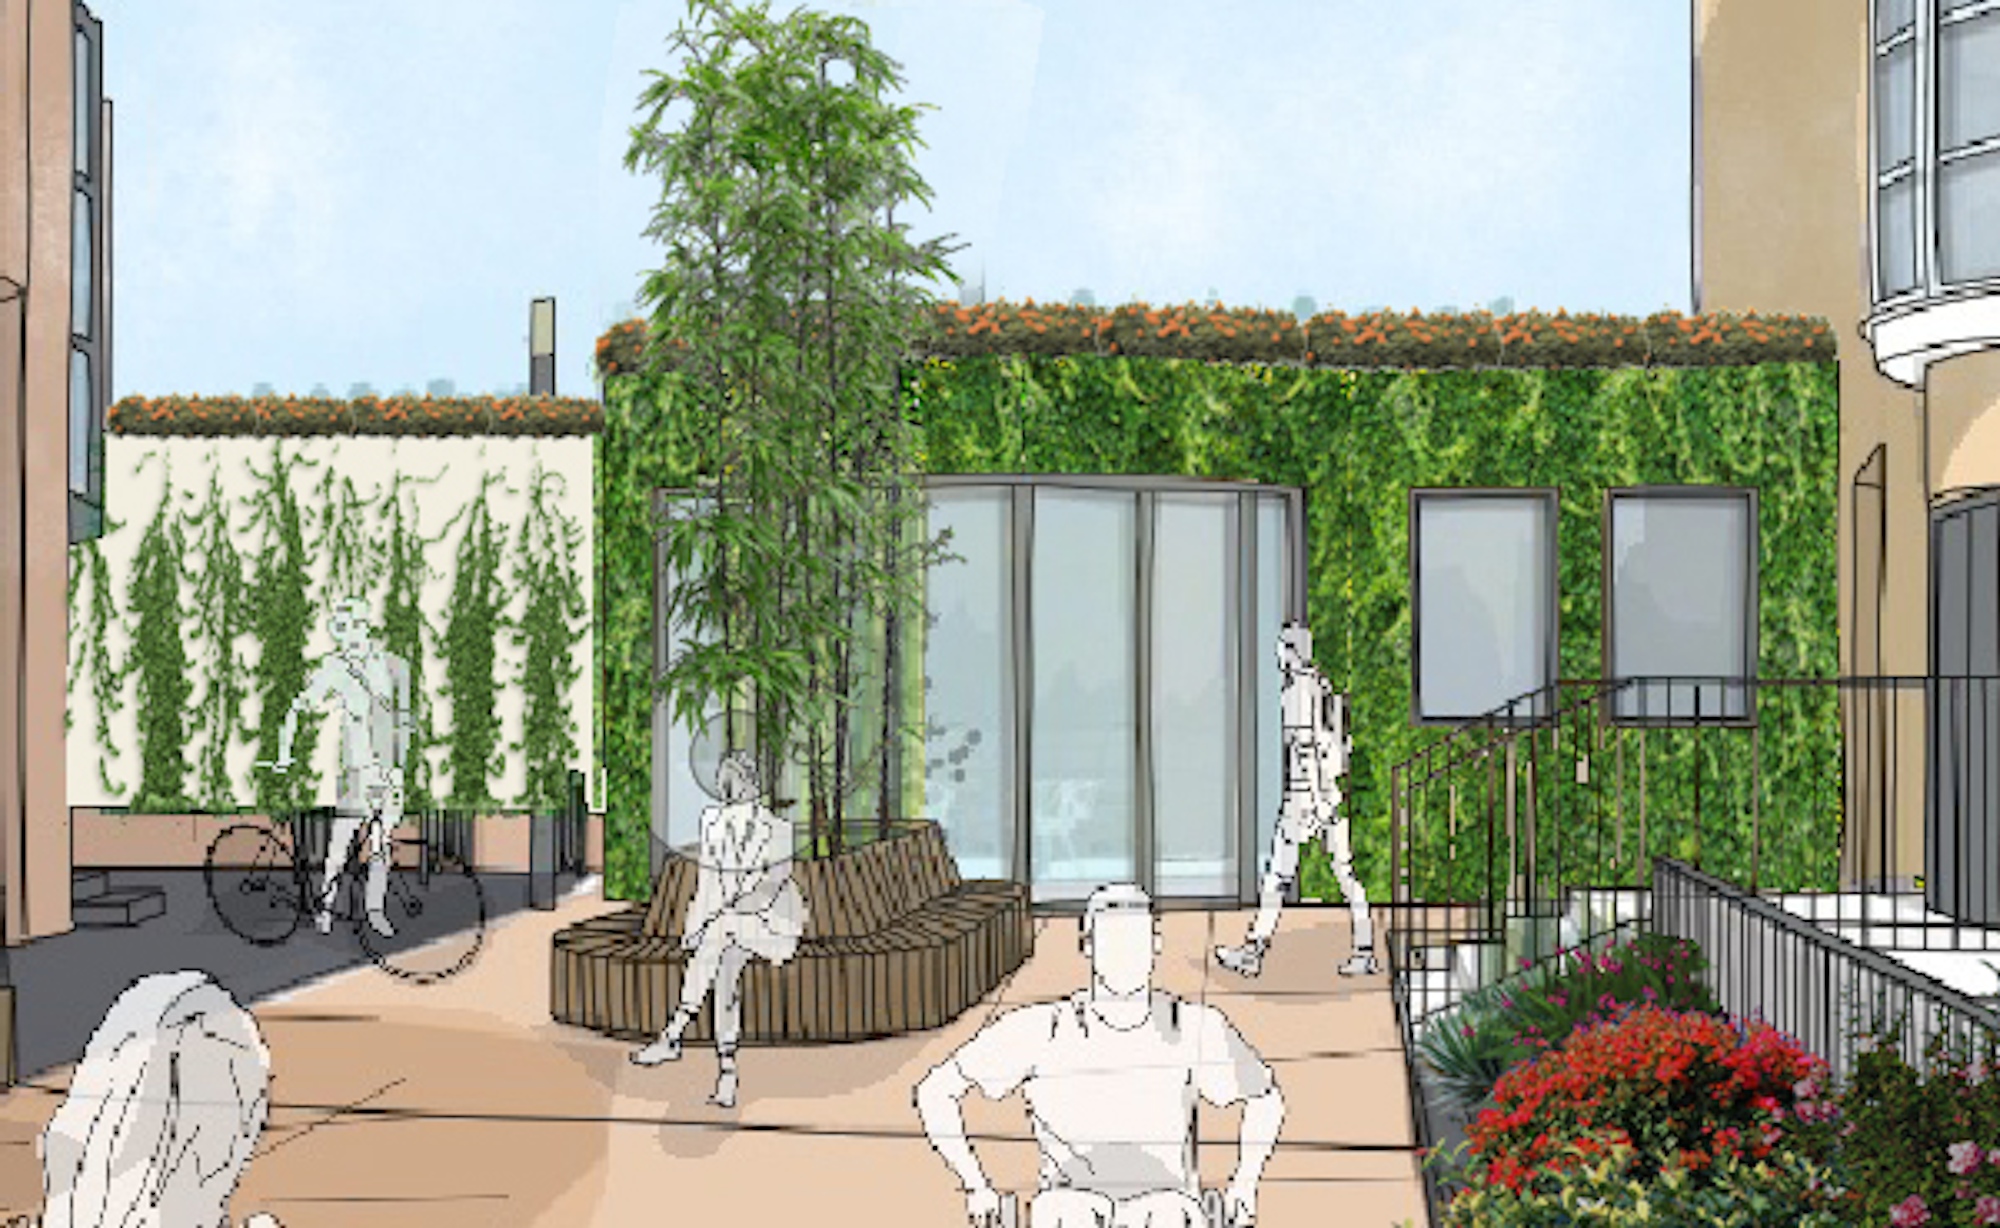 3D-Visualisierung einer lebenden Wand, eines Bambusbaums, einer Bodenbepflanzung, einer Dachbegrünung mit Wildblumen und Drahtkletterpflanzen.